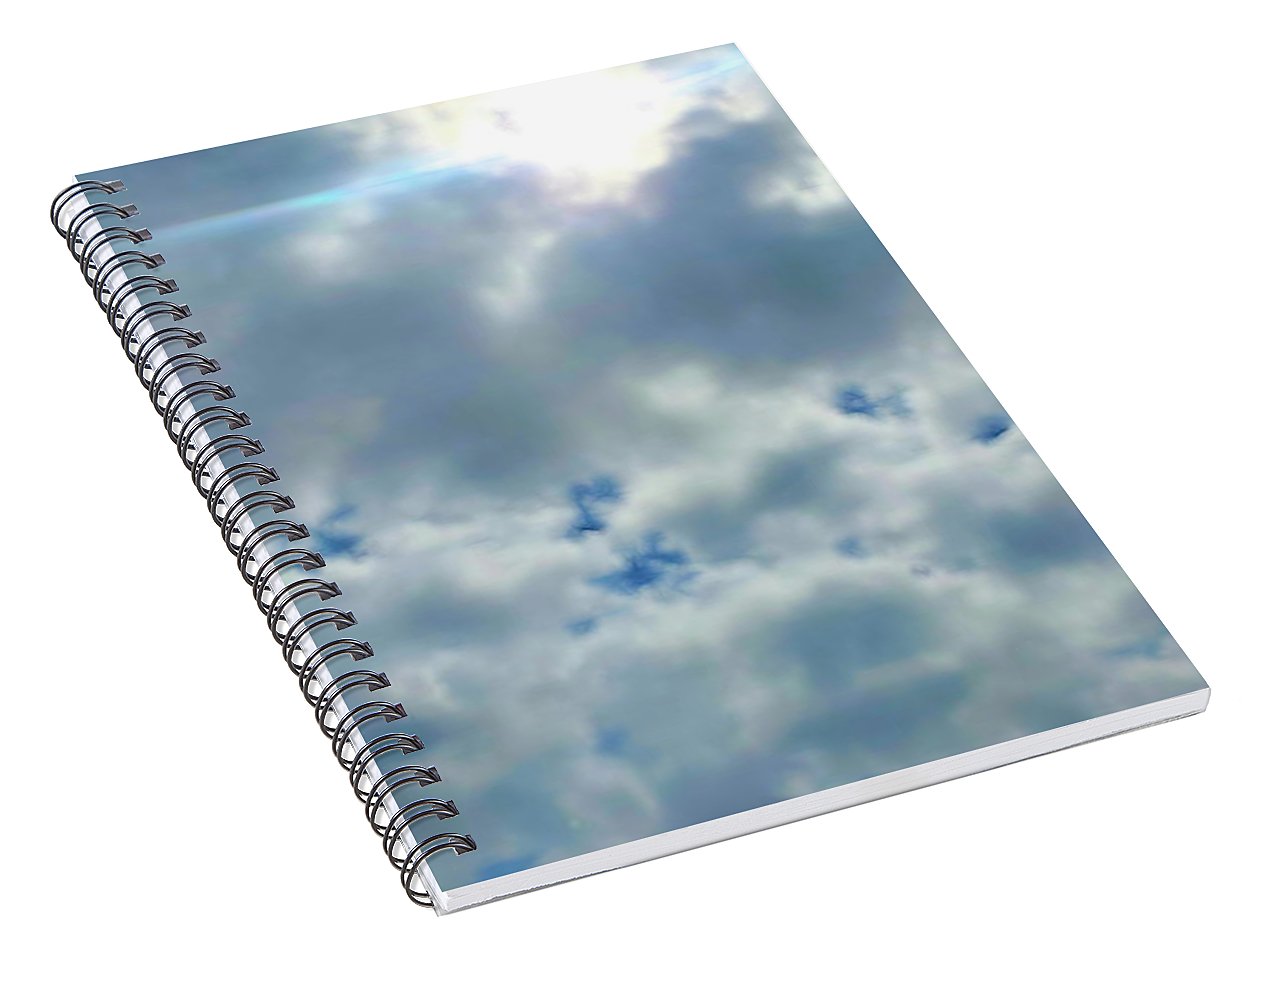 Clouds Above a Park - Spiral Notebook